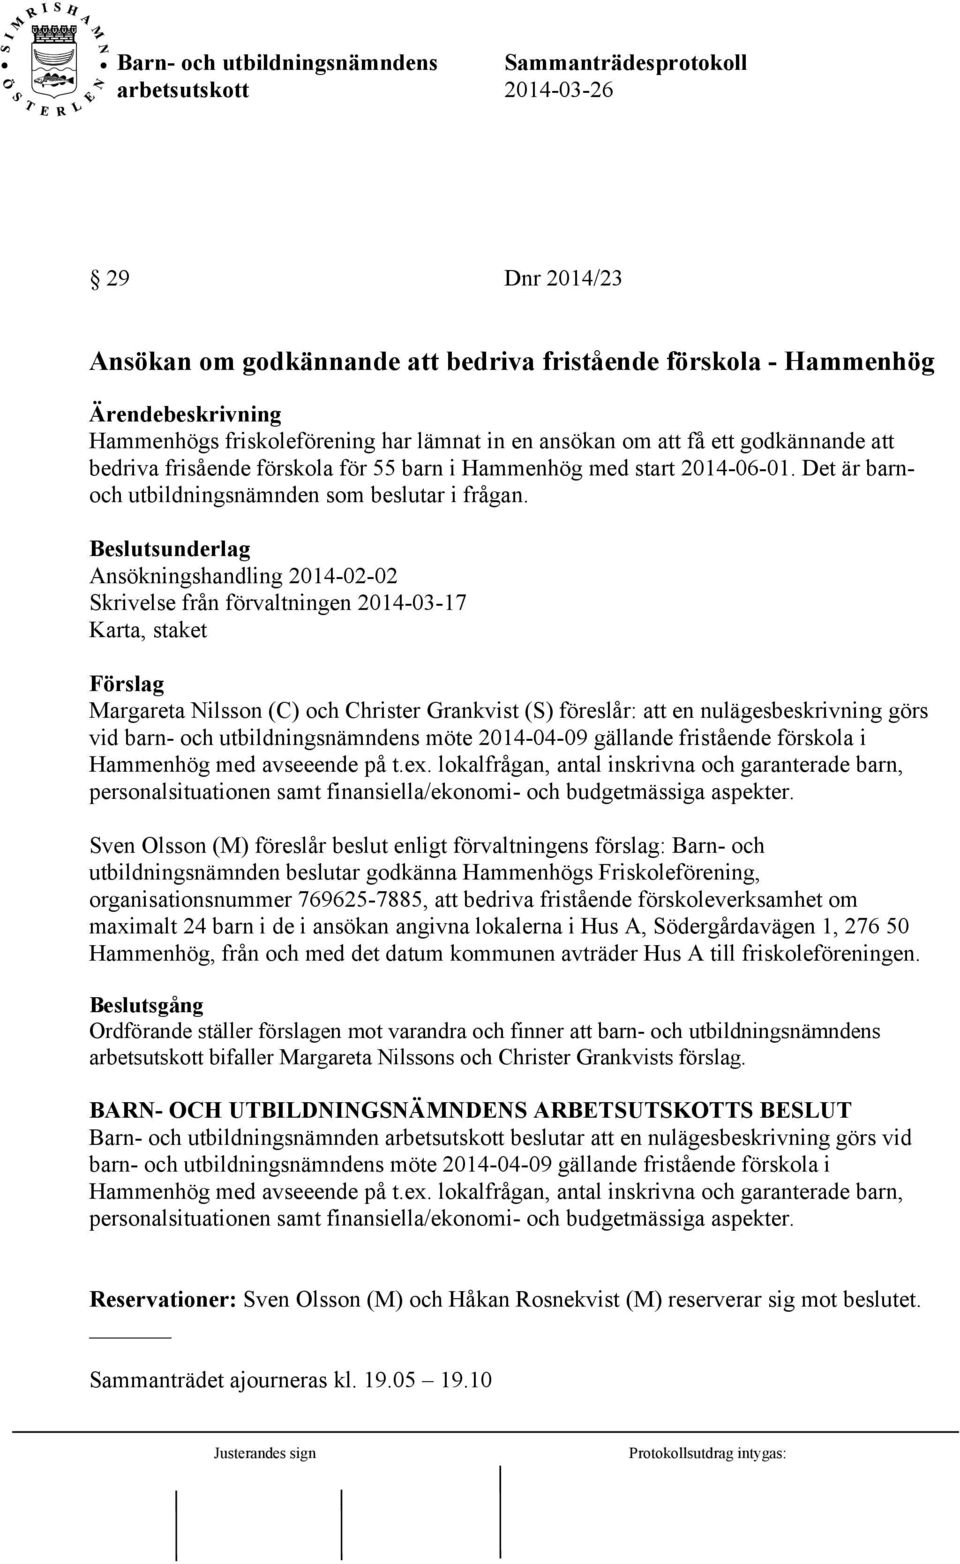 Ansökningshandling 2014-02-02 Skrivelse från förvaltningen 2014-03-17 Karta, staket Förslag Margareta Nilsson (C) och Christer Grankvist (S) föreslår: att en nulägesbeskrivning görs vid barn- och